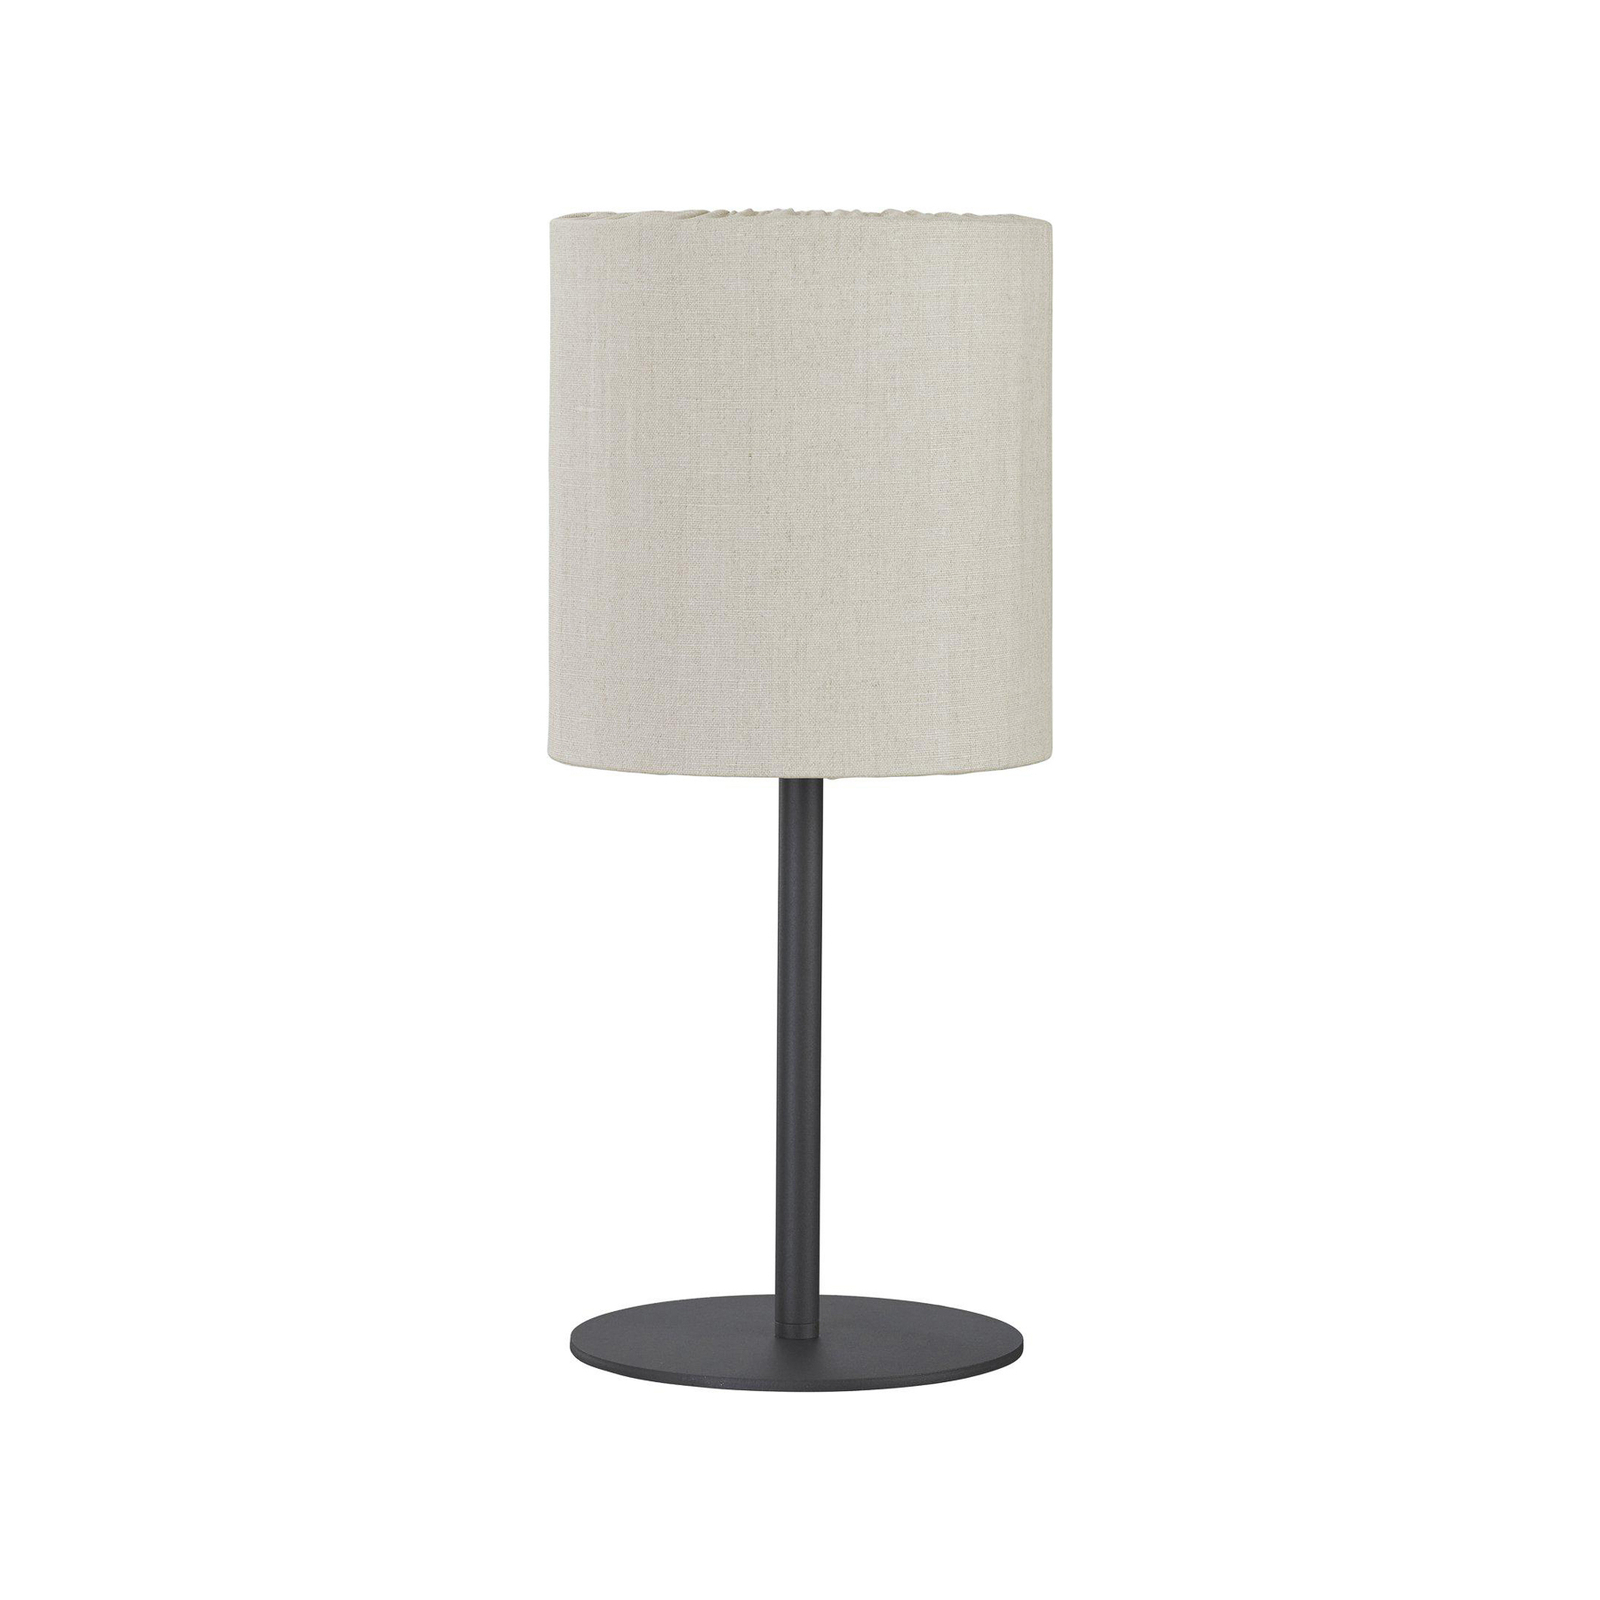 PR Home tafellamp Agnar voor buiten, donkergrijs/beige, 57 cm